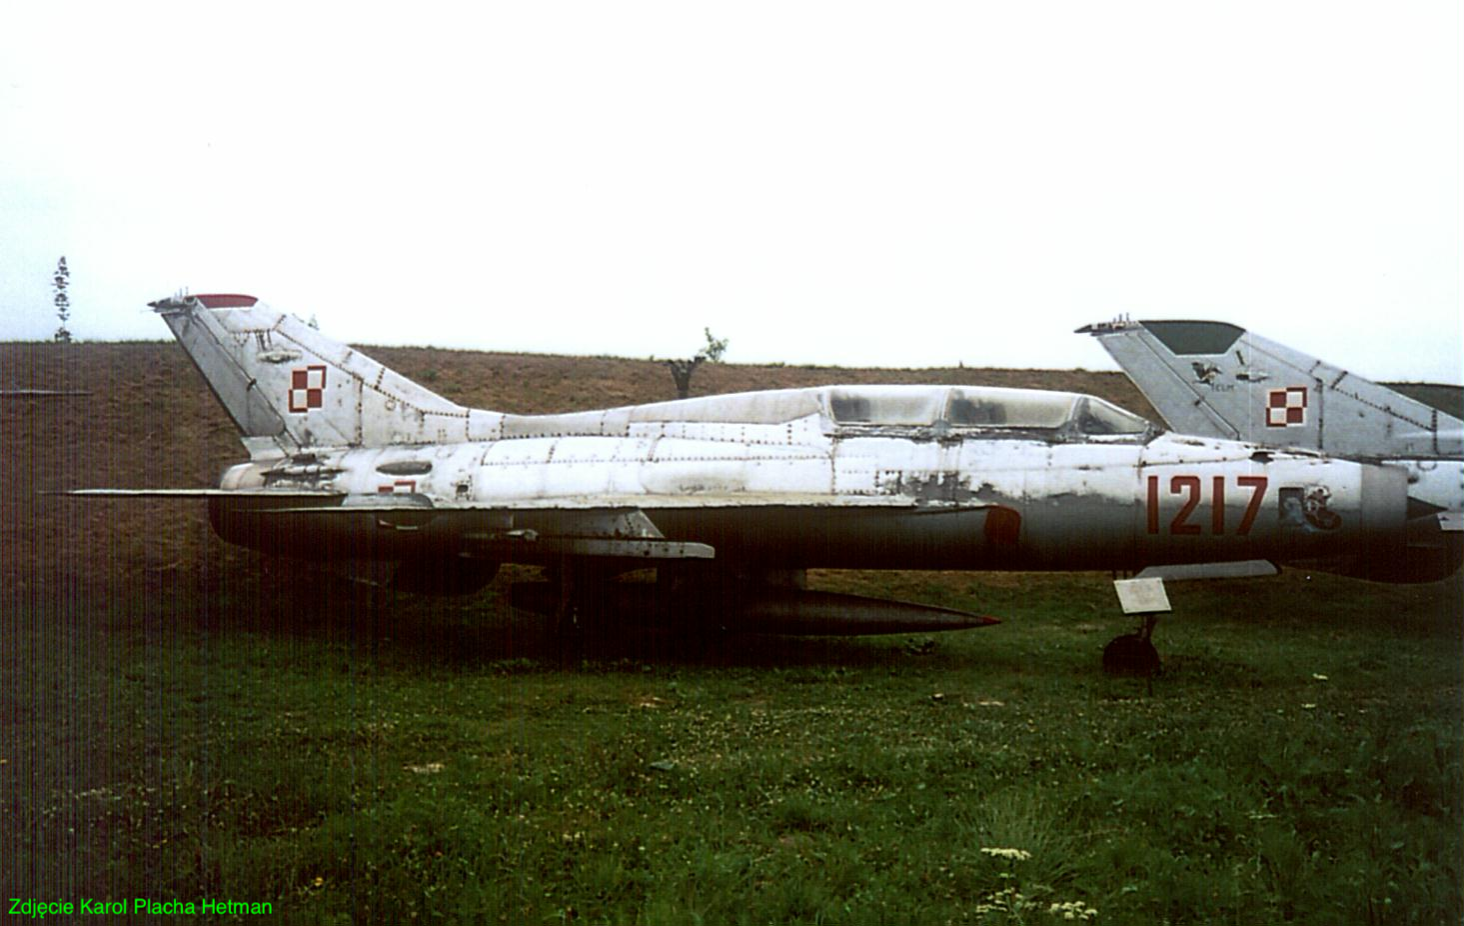 MiG-21 U nb 1217. 2002 year. Photo by Karol Placha Hetman